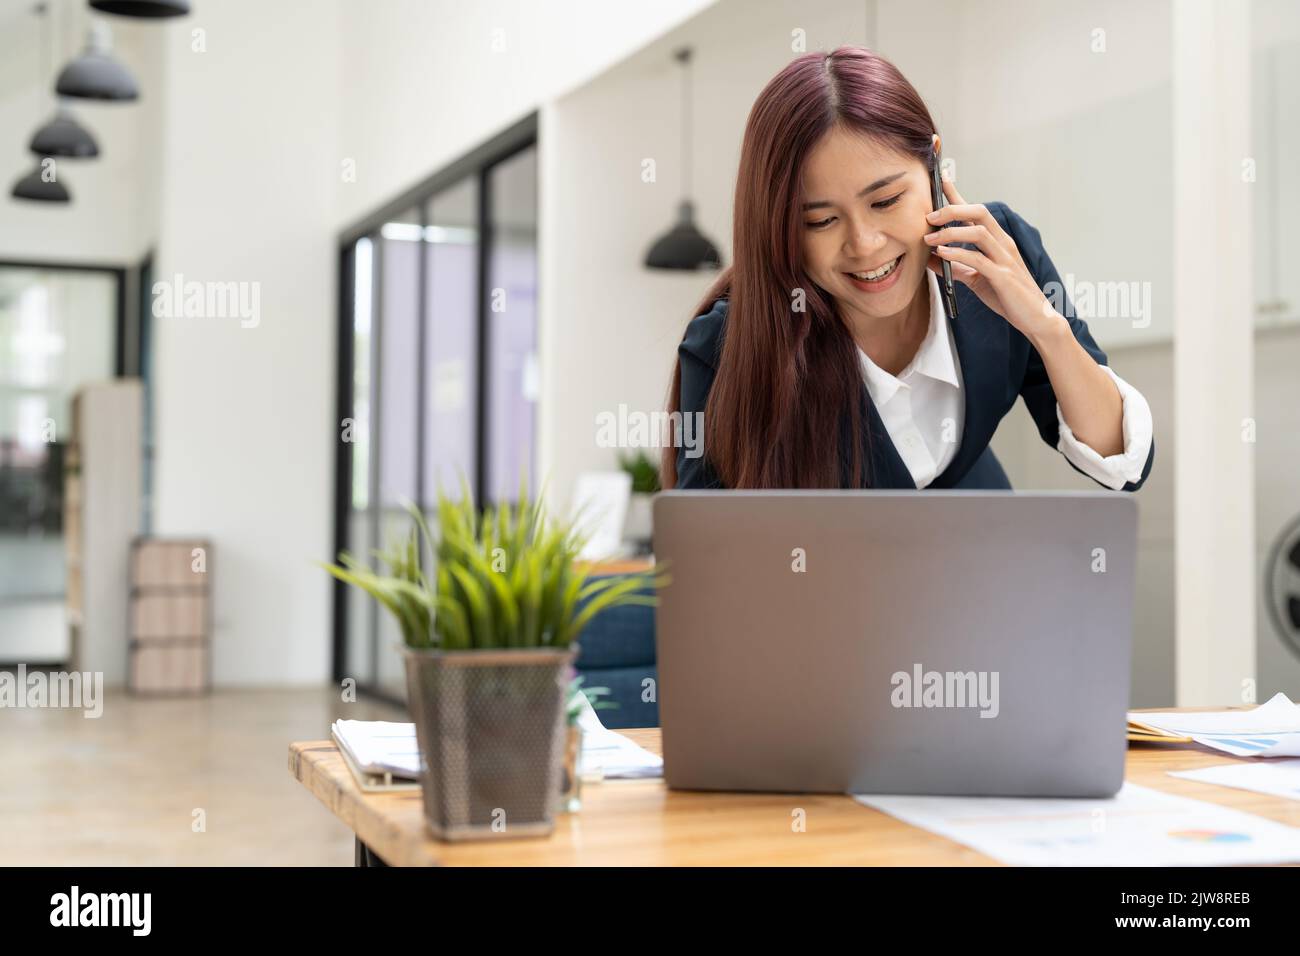 Fröhliche junge schöne Frau, die auf dem Mobiltelefon redet und mit einem Laptop lächelt, während sie an ihrem Arbeitsplatz sitzt. Copyspace. Stockfoto